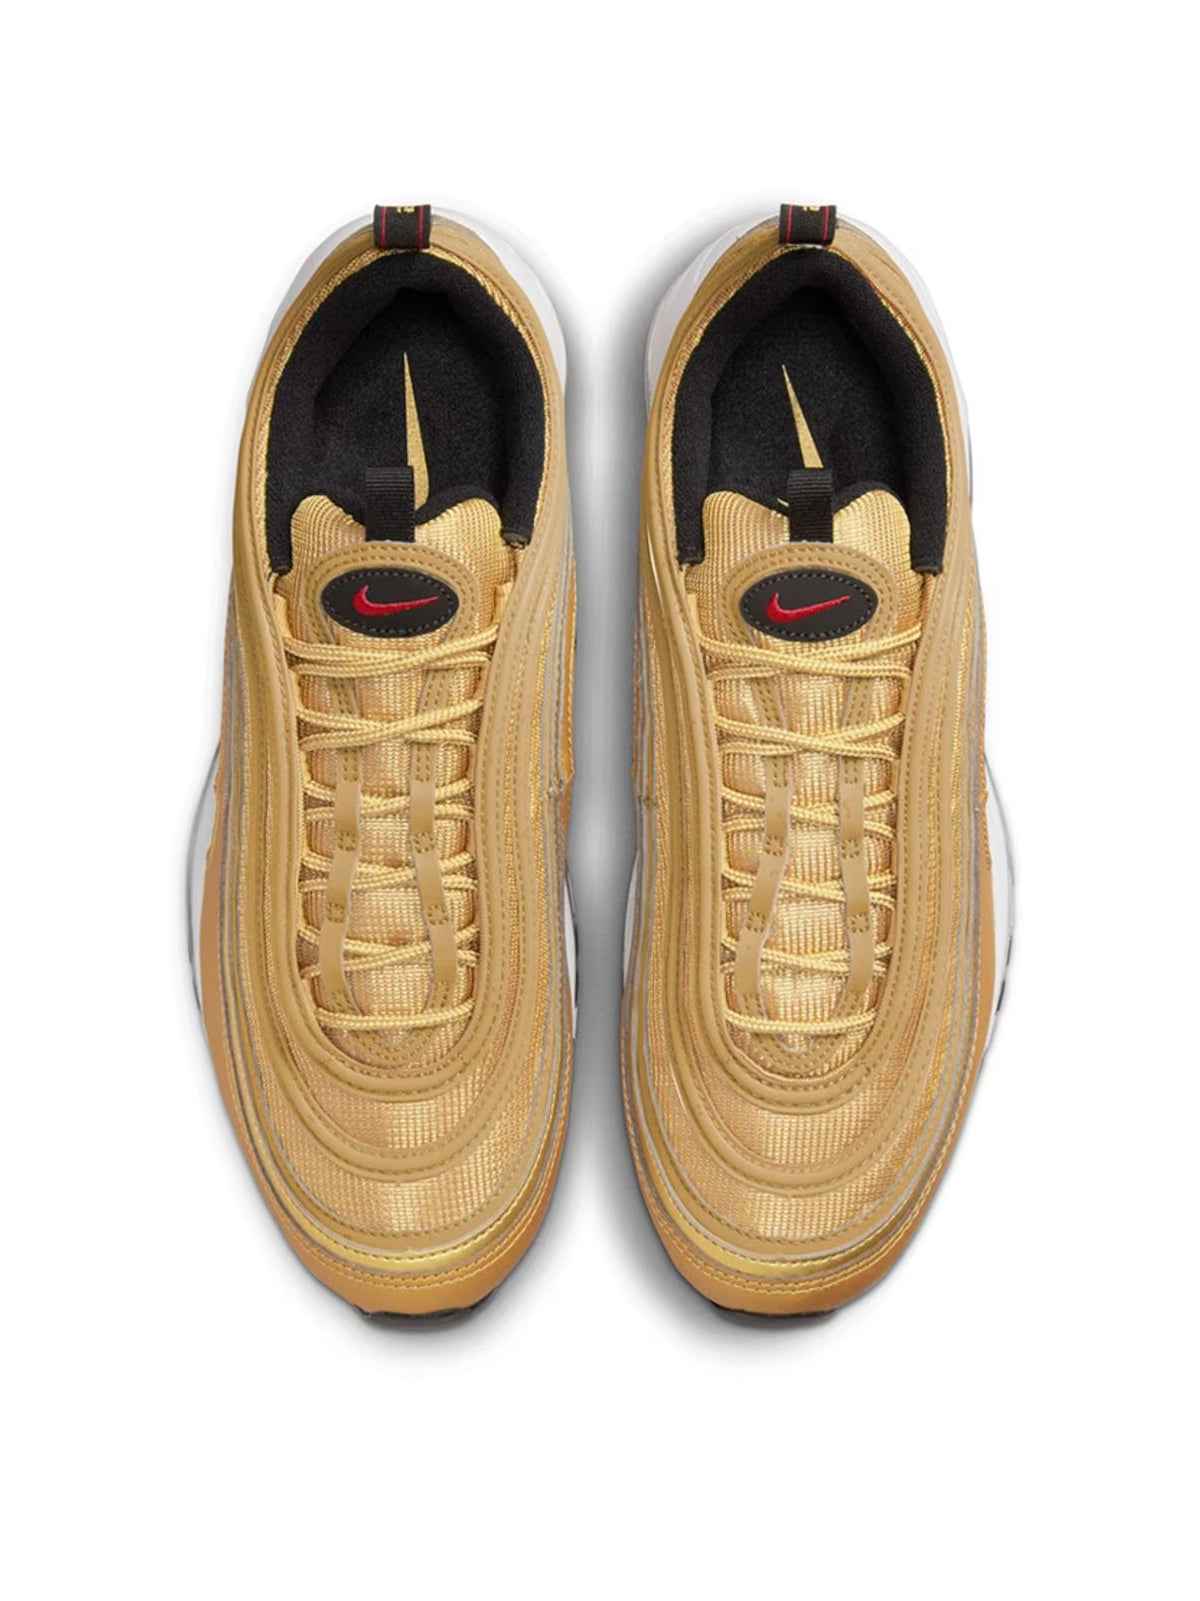 Nike-OUTLET-SALE-Air Max 97 OG "Golden Bullet" Sneakers-ARCHIVIST